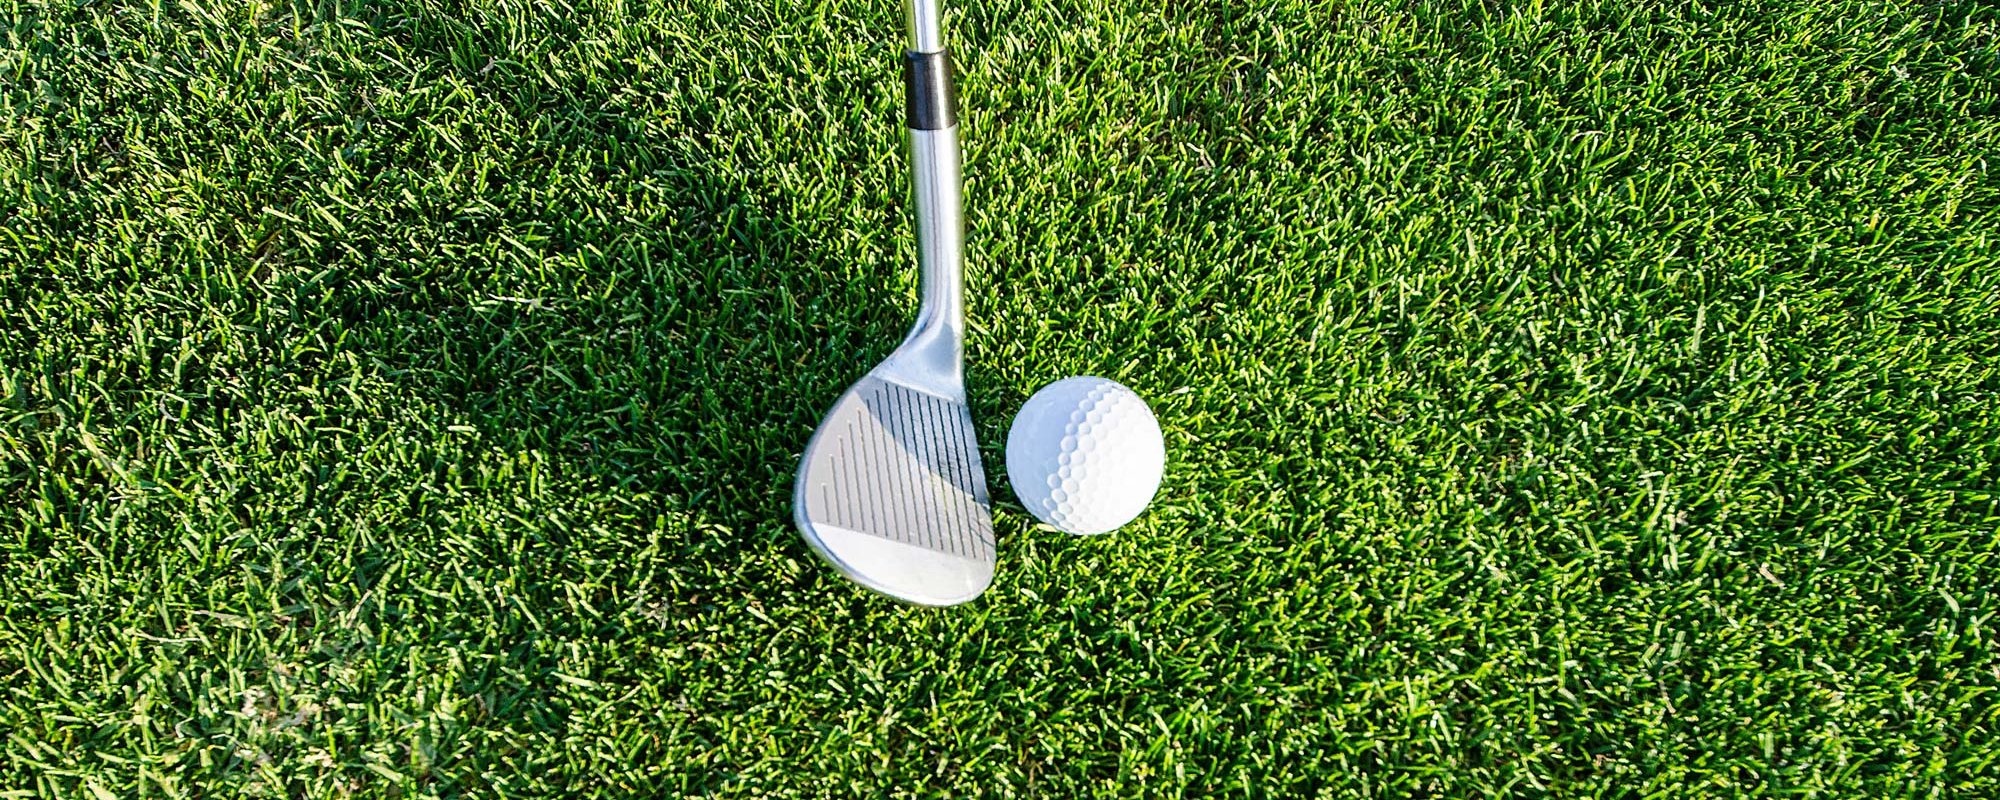 Detailaufnahme eines Golfschlägers und eines Golfballs auf dem Golfplatz (Allgäuer Golf- und Landclub e.V.)